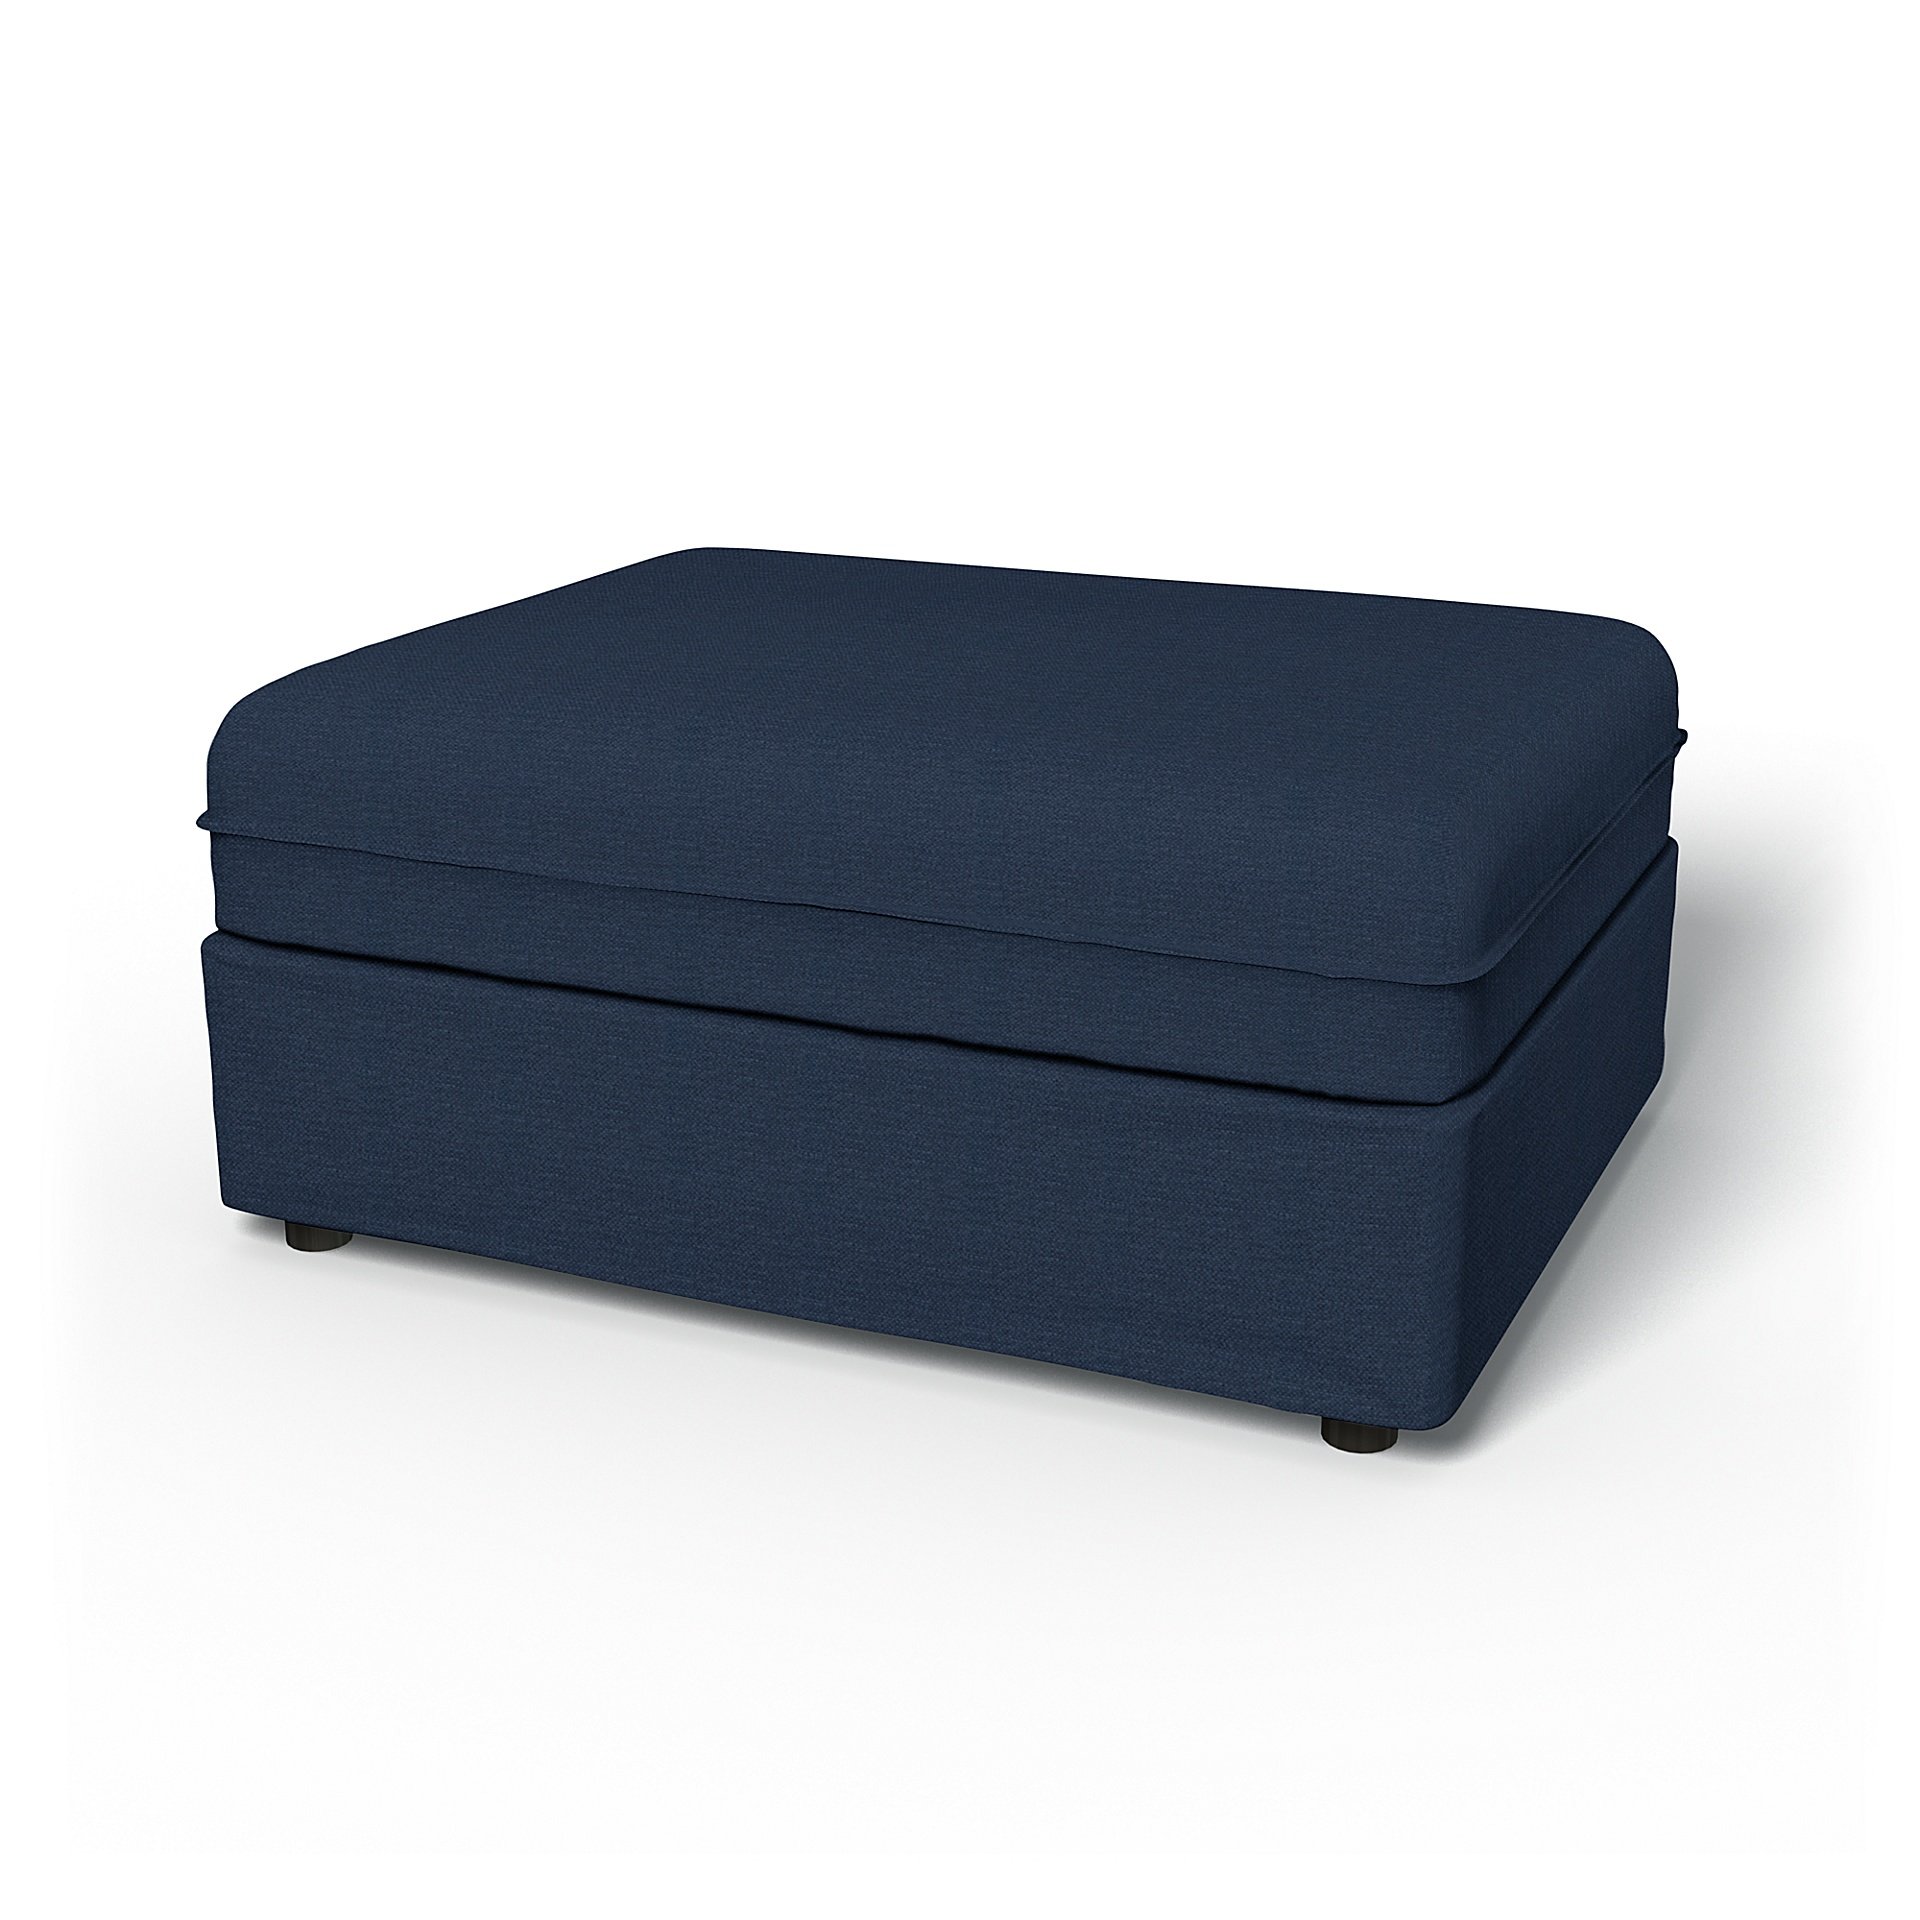 IKEA - Vallentuna Seat Module Cover 100x80cm 39x32in, Navy Blue, Linen - Bemz